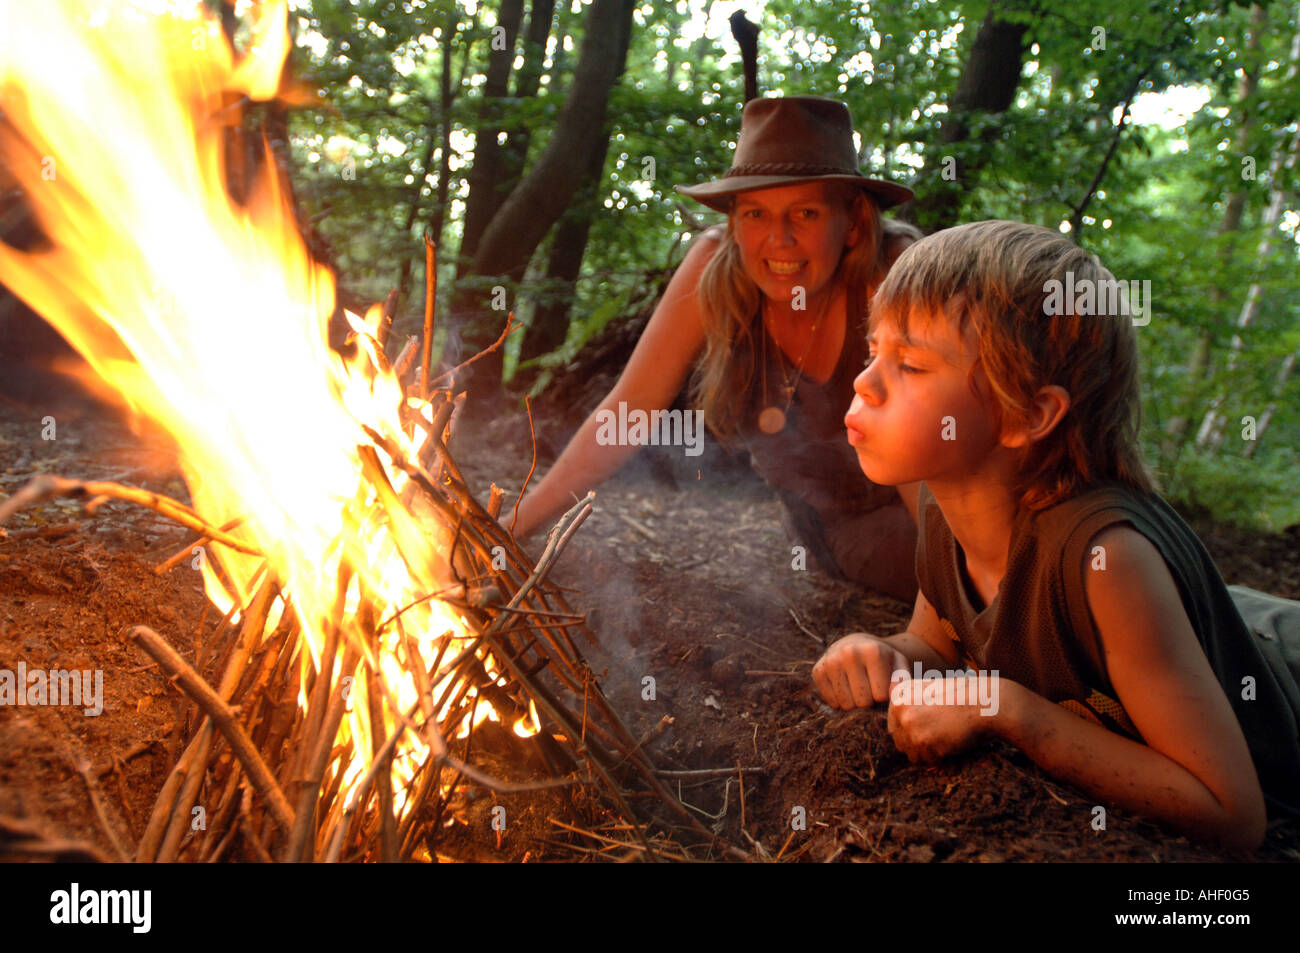 Kleiner Junge bläst einen Lagerfeuer in das Leben in einem Waldgebiet clearing als Frau blickt auf zustimmend Stockfoto